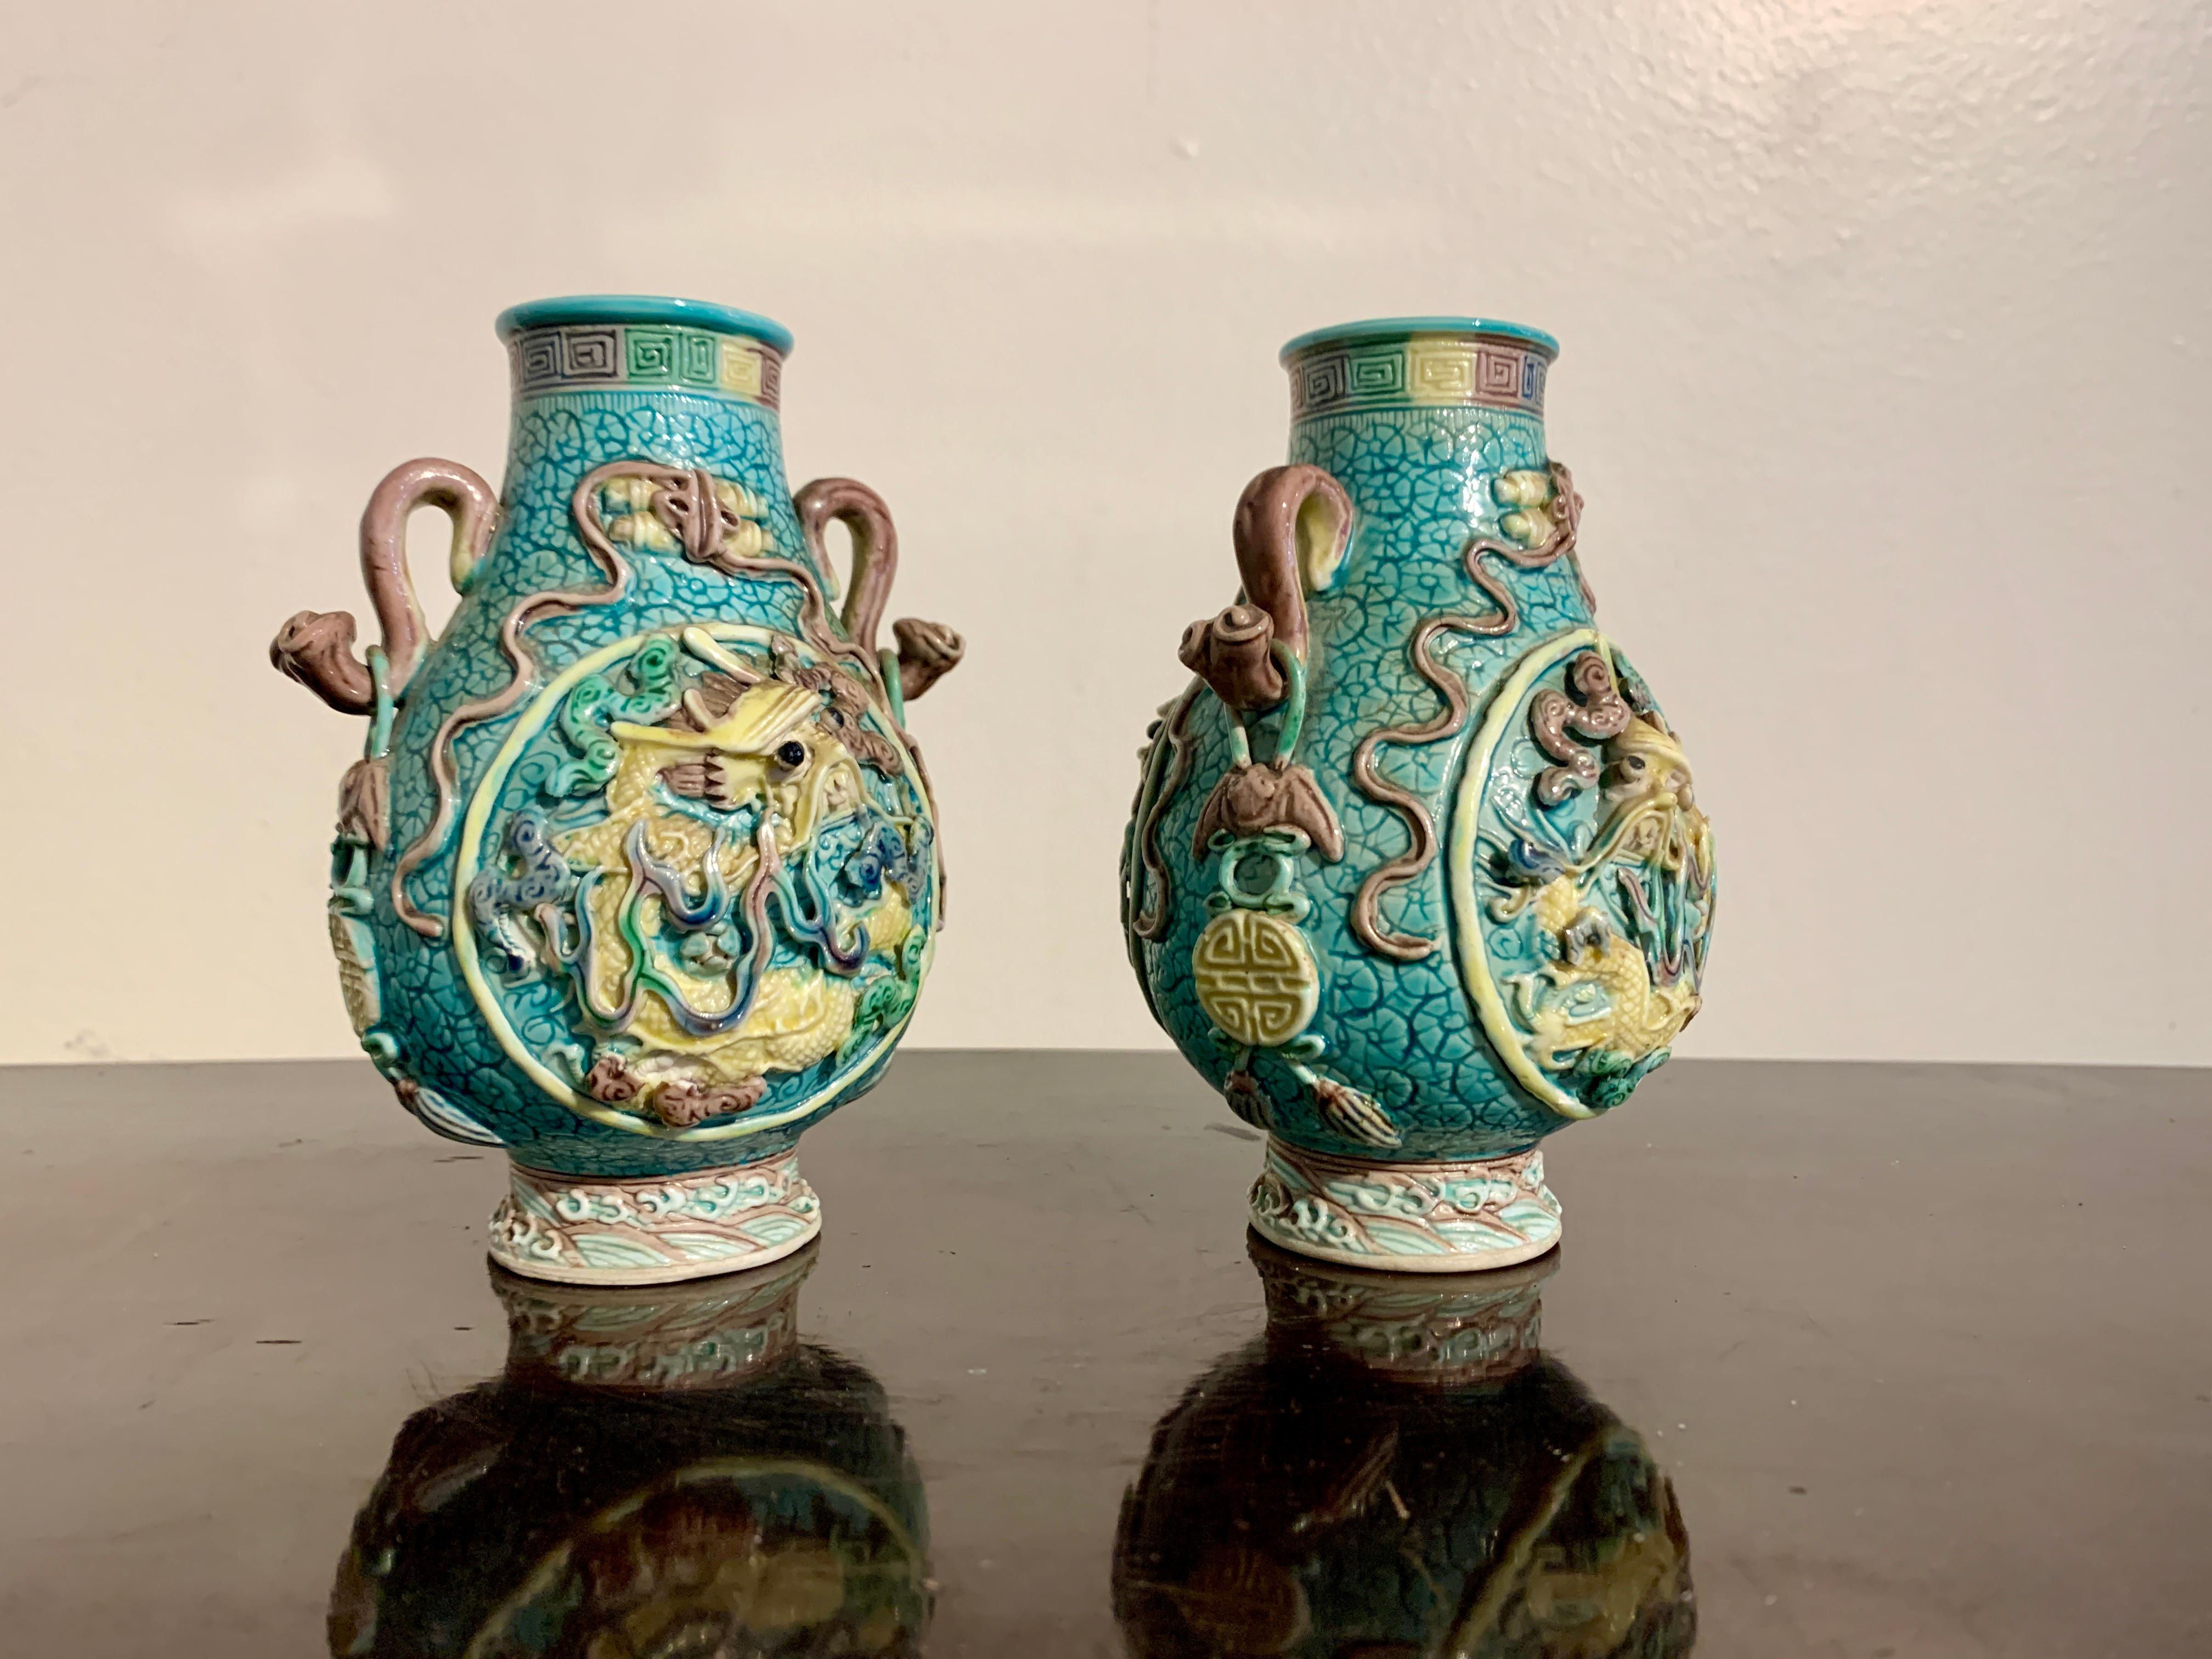 Une fabuleuse paire de petits vases dragon en porcelaine chinoise moulée et émaillée, avec les yeux détachés et la marque apocryphe Qianlong, période de la République, vers 1920, Chine.

Les petits vases sont de forme traditionnelle 